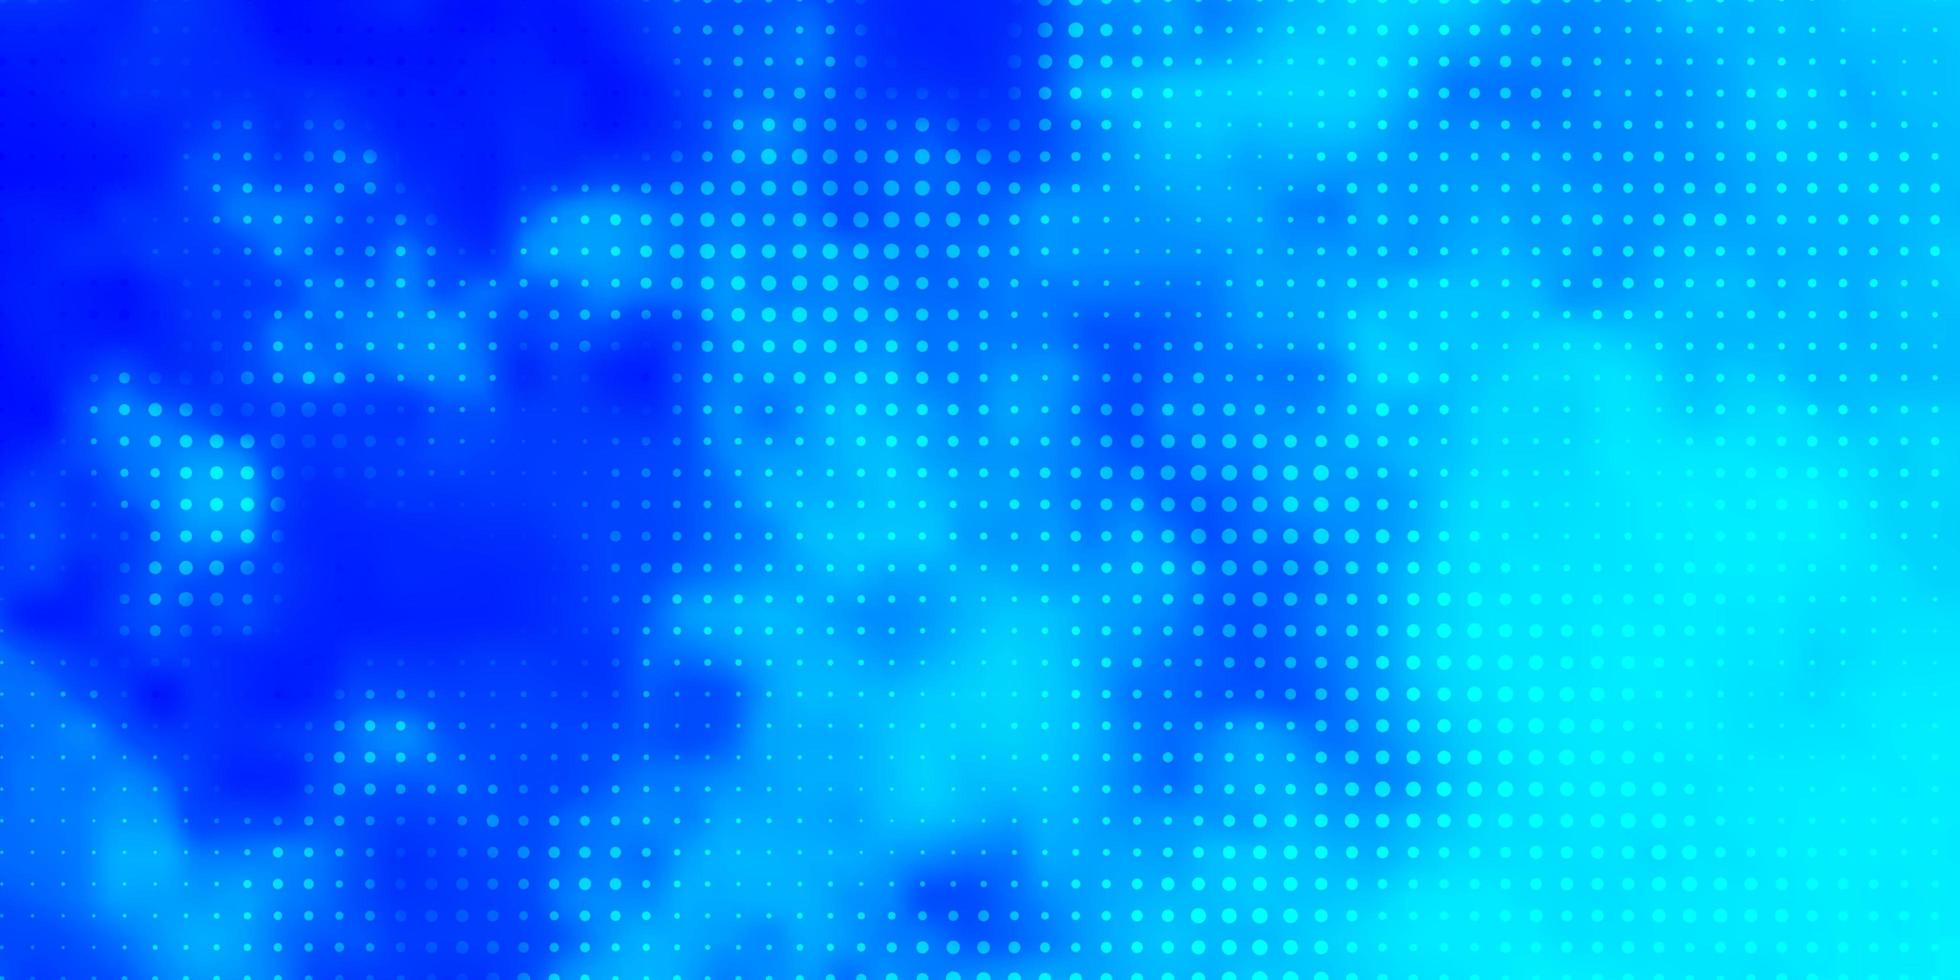 sfondo vettoriale azzurro con macchie disegno decorativo astratto in stile sfumato con design a bolle per poster banner